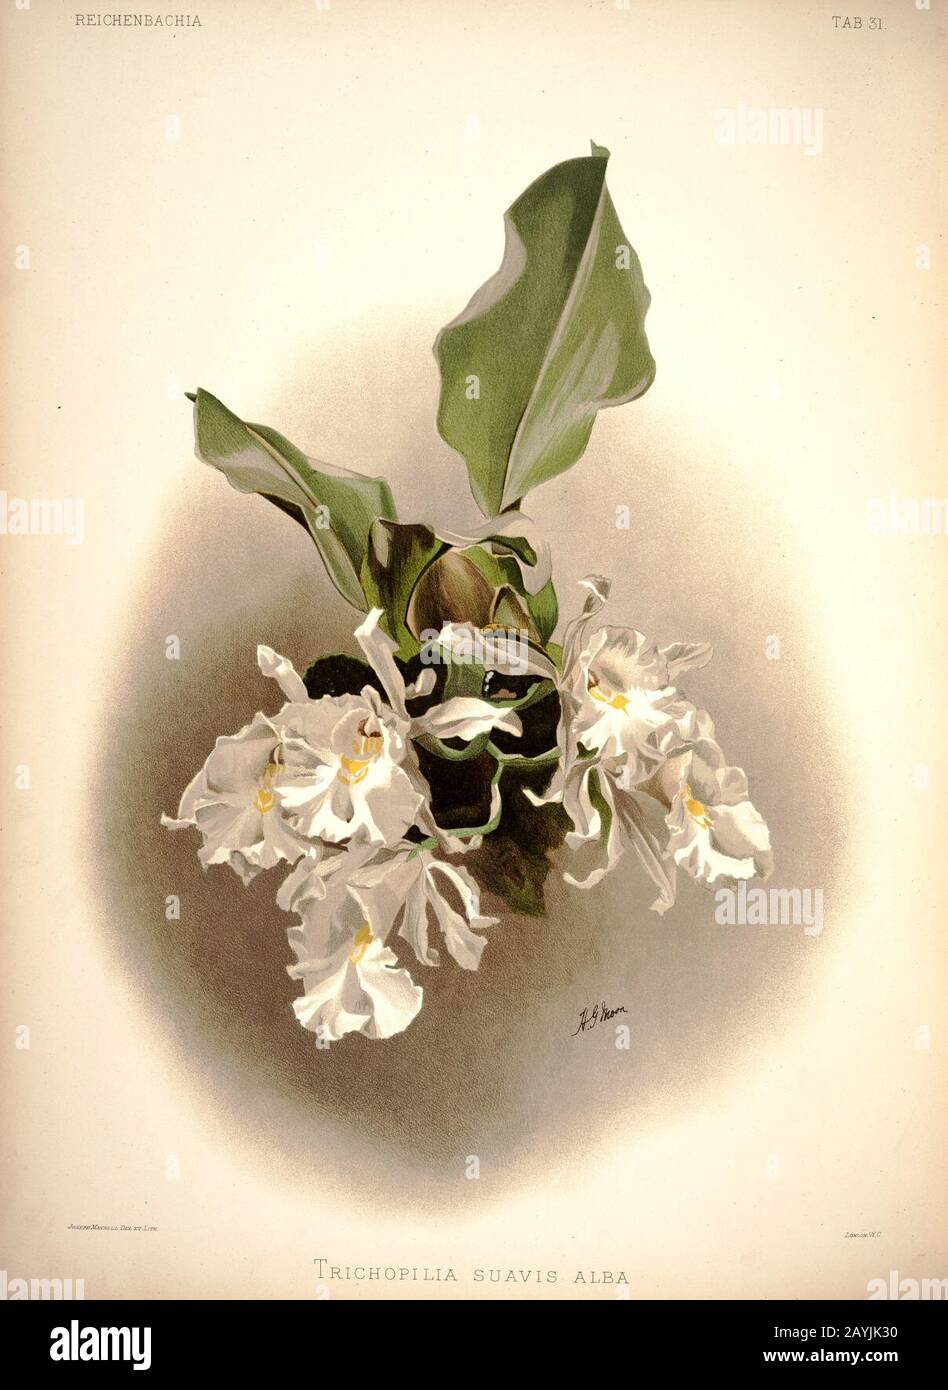 Frederick Sander - Reichenbachia I plaque 31 (1888) - Trichopilia suavis alba. Banque D'Images